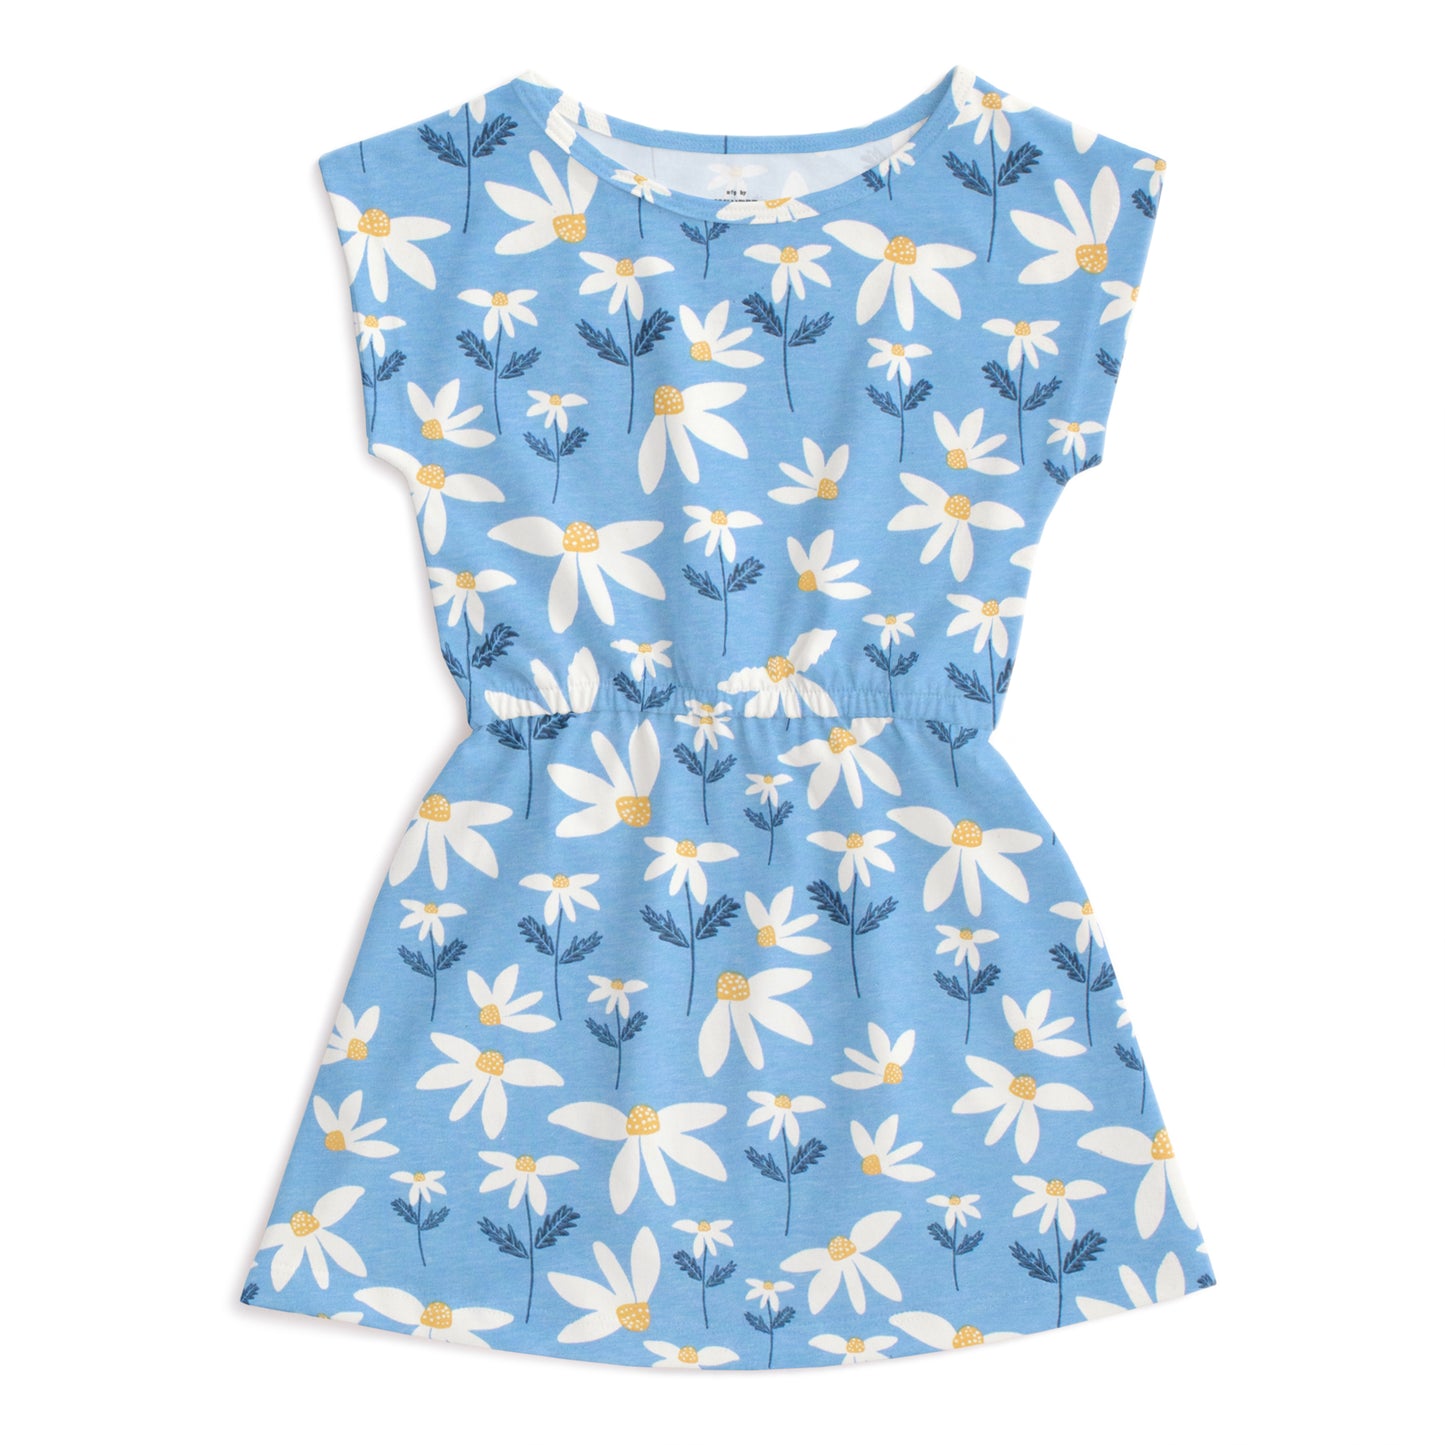 Sierra Dress - Daisies Blue